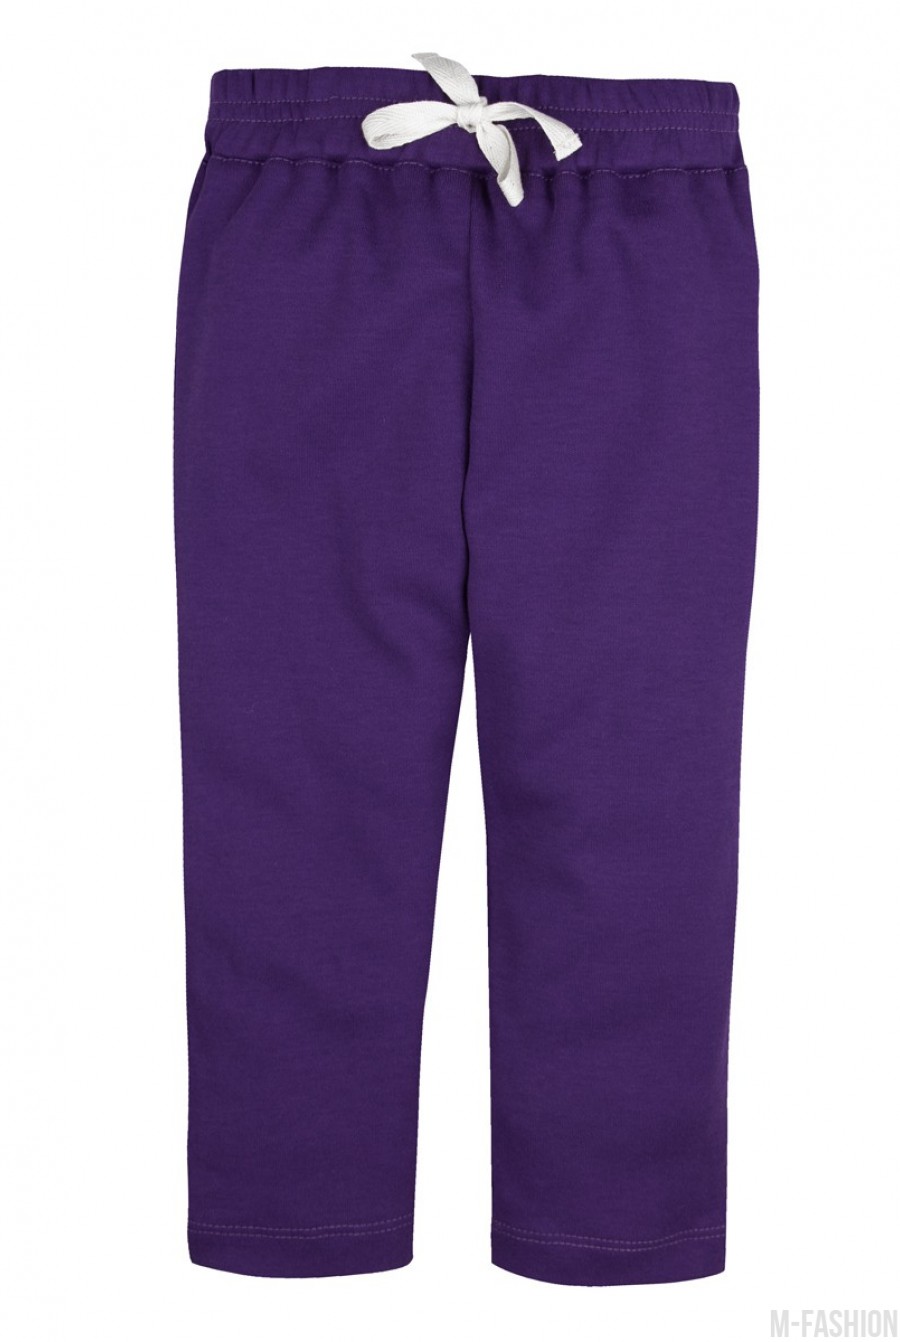 Фиолетовые трикотажные штаны на резинке - Фото 1